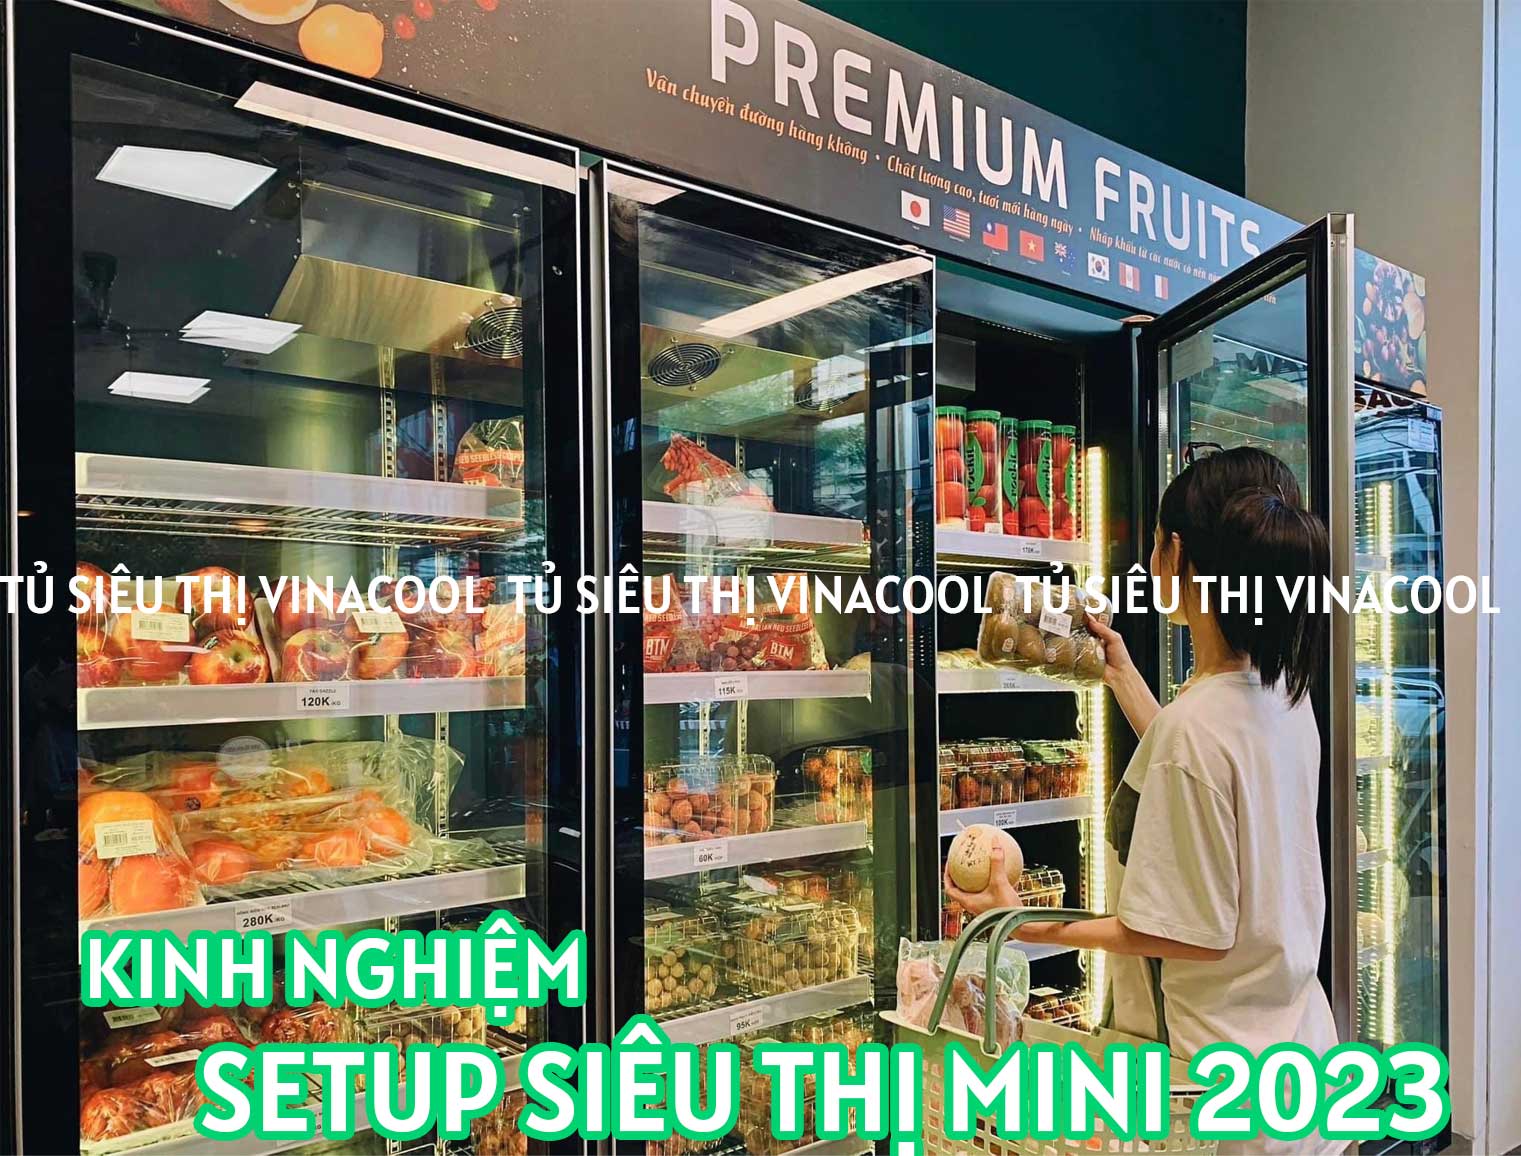 Kinh nghiệm setup siêu thị mini cho người mới bắt đầu 2023